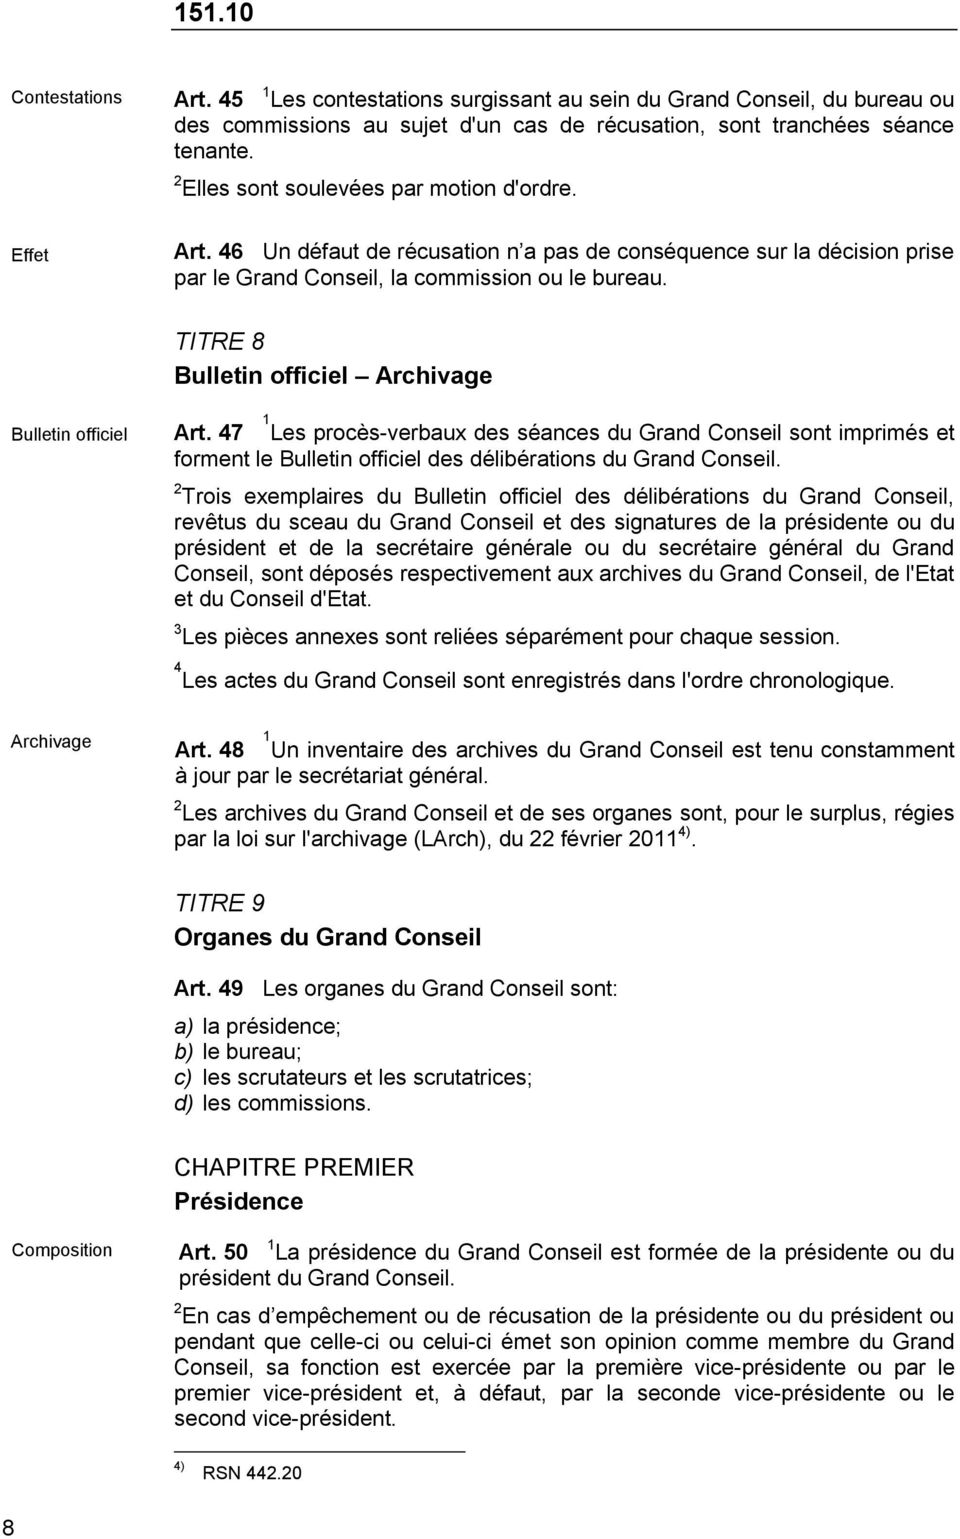 TITRE 8 Bulletin officiel Archivage Bulletin officiel 1 Art. 47 Les procès-verbaux des séances du Grand Conseil sont imprimés et forment le Bulletin officiel des délibérations du Grand Conseil.